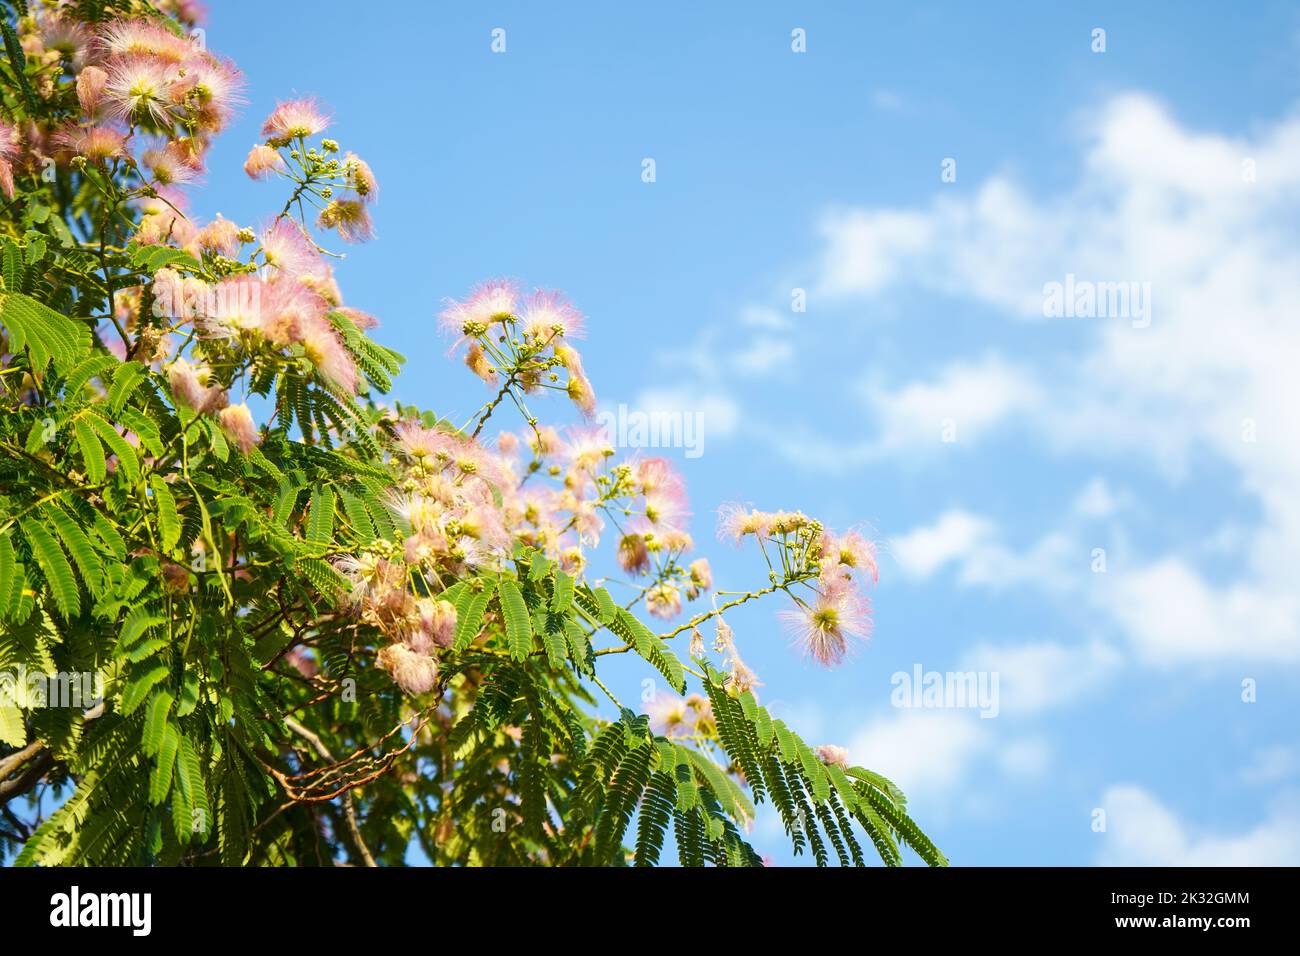 Rosa flauschige Blüten von persischem Seidenbaum (Albizia julibrissin) auf blauem Himmel Hintergrund. Japanische Akazie oder rosa Seidenbaum die Familie Fabaceae. Stockfoto